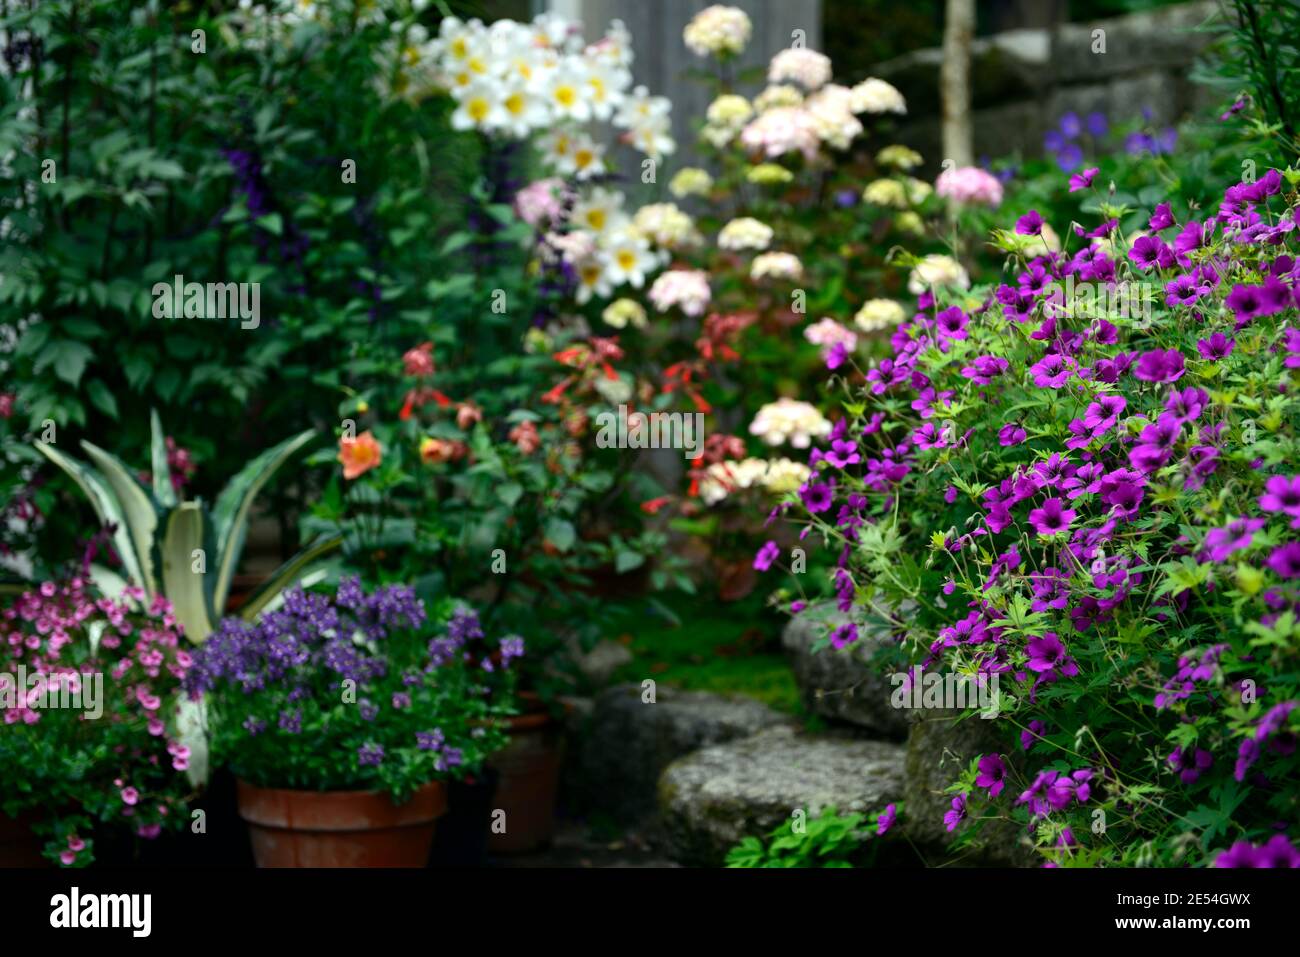 Géranium anne thomson,Hydrangea preziosa,lilium regale,lis regale,agave mediopicta aurea,hortensias et nénuphars,rose fleurs blanches, fleurs combinati Banque D'Images